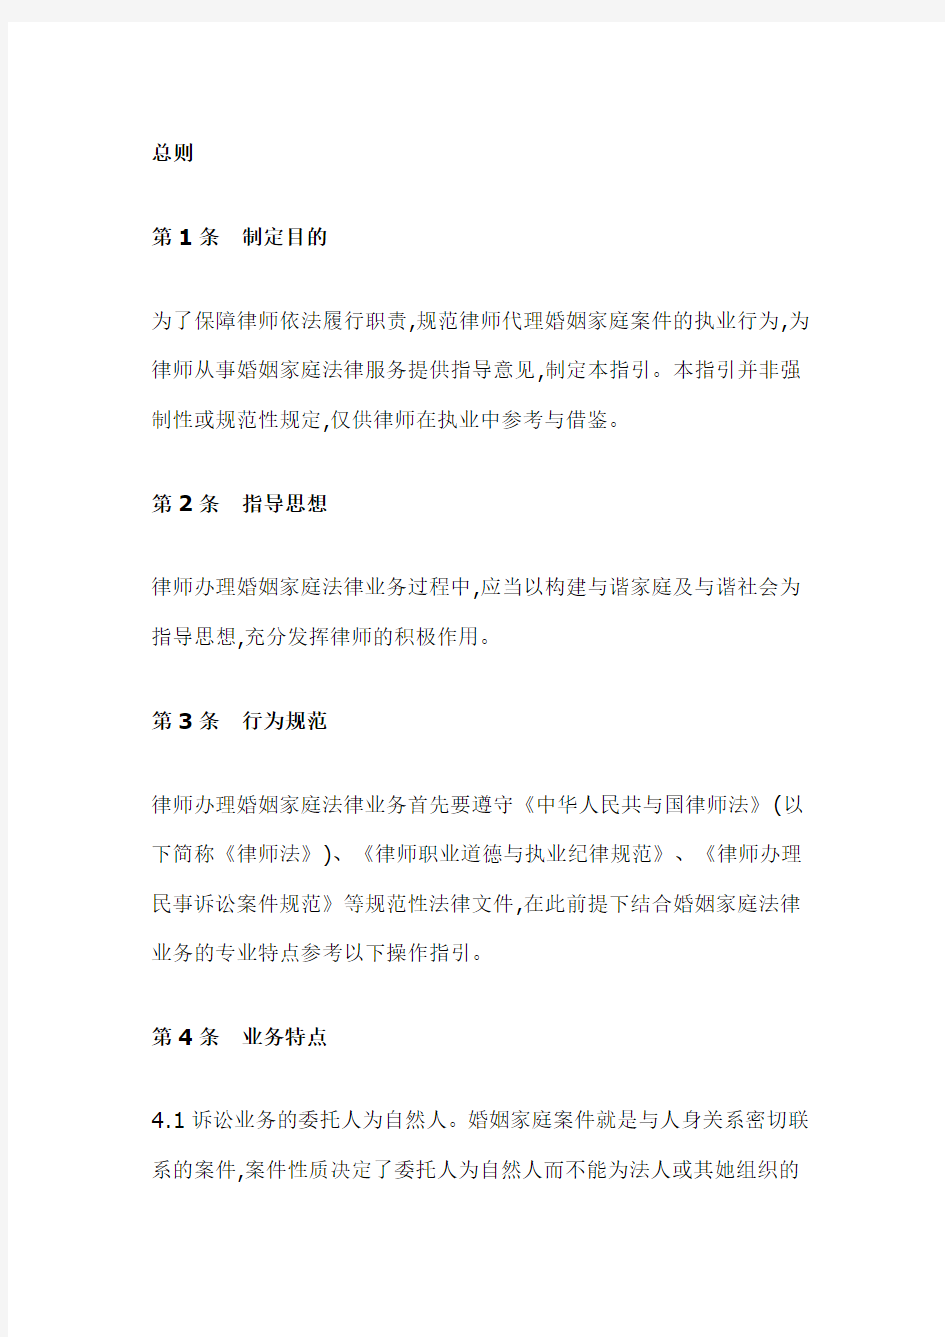 中华全国律师协会律师办理婚姻家庭法律业务操作指引